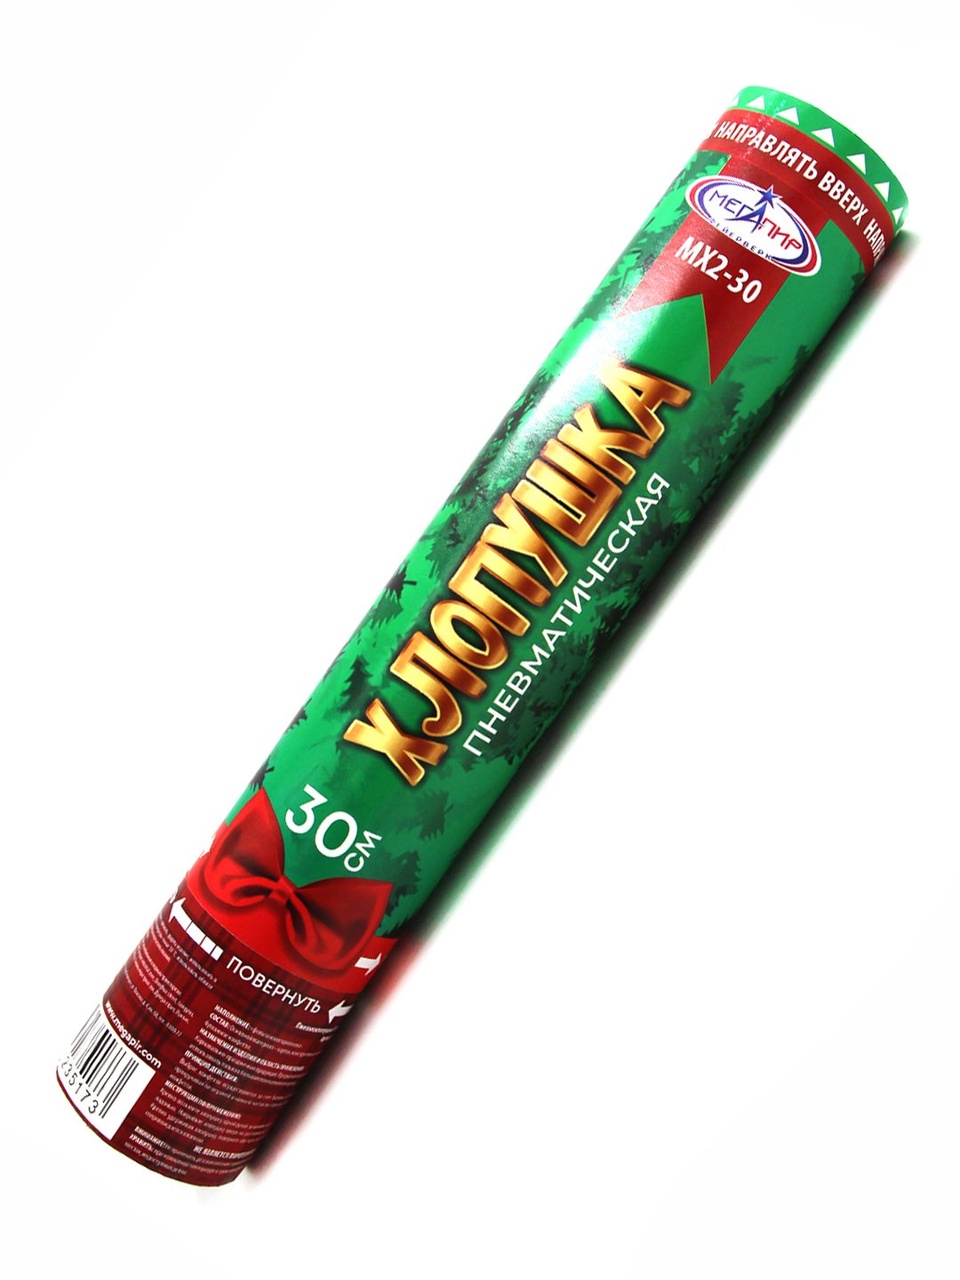 Пневматическая хлопушка 30 см наполнитель конфетти новогодняя ёлка МХ2-30 - 200 ₽, заказать онлайн.